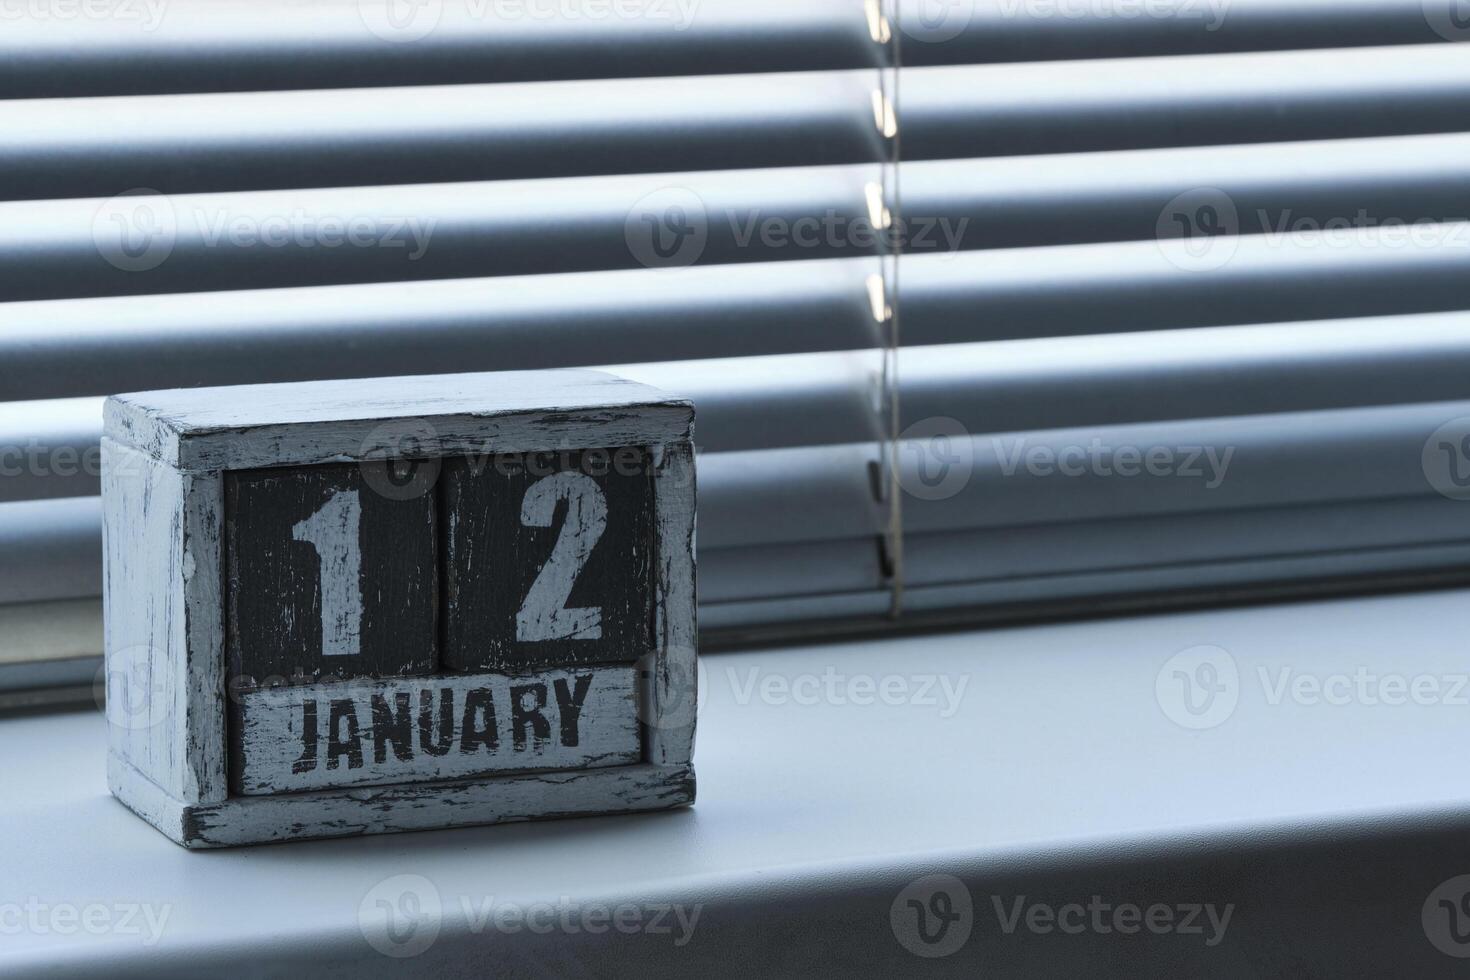 morgon- januari 12 på trä- kalender stående på fönster med persienner. foto